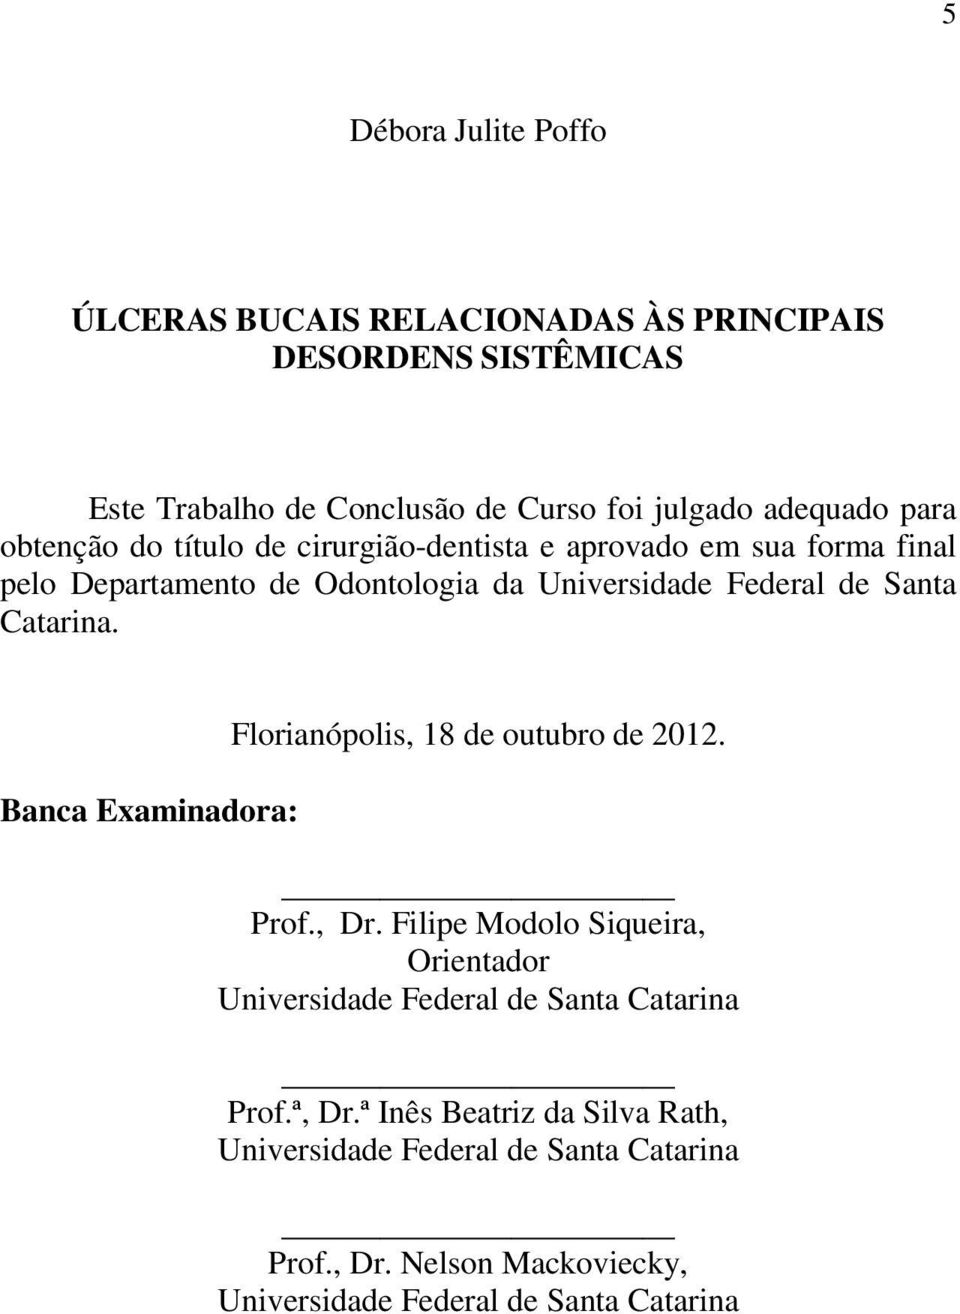 Banca Examinadora: Florianópolis, 18 de outubro de 2012. Prof., Dr. Filipe Modolo Siqueira, Orientador Universidade Federal de Santa Catarina Prof.